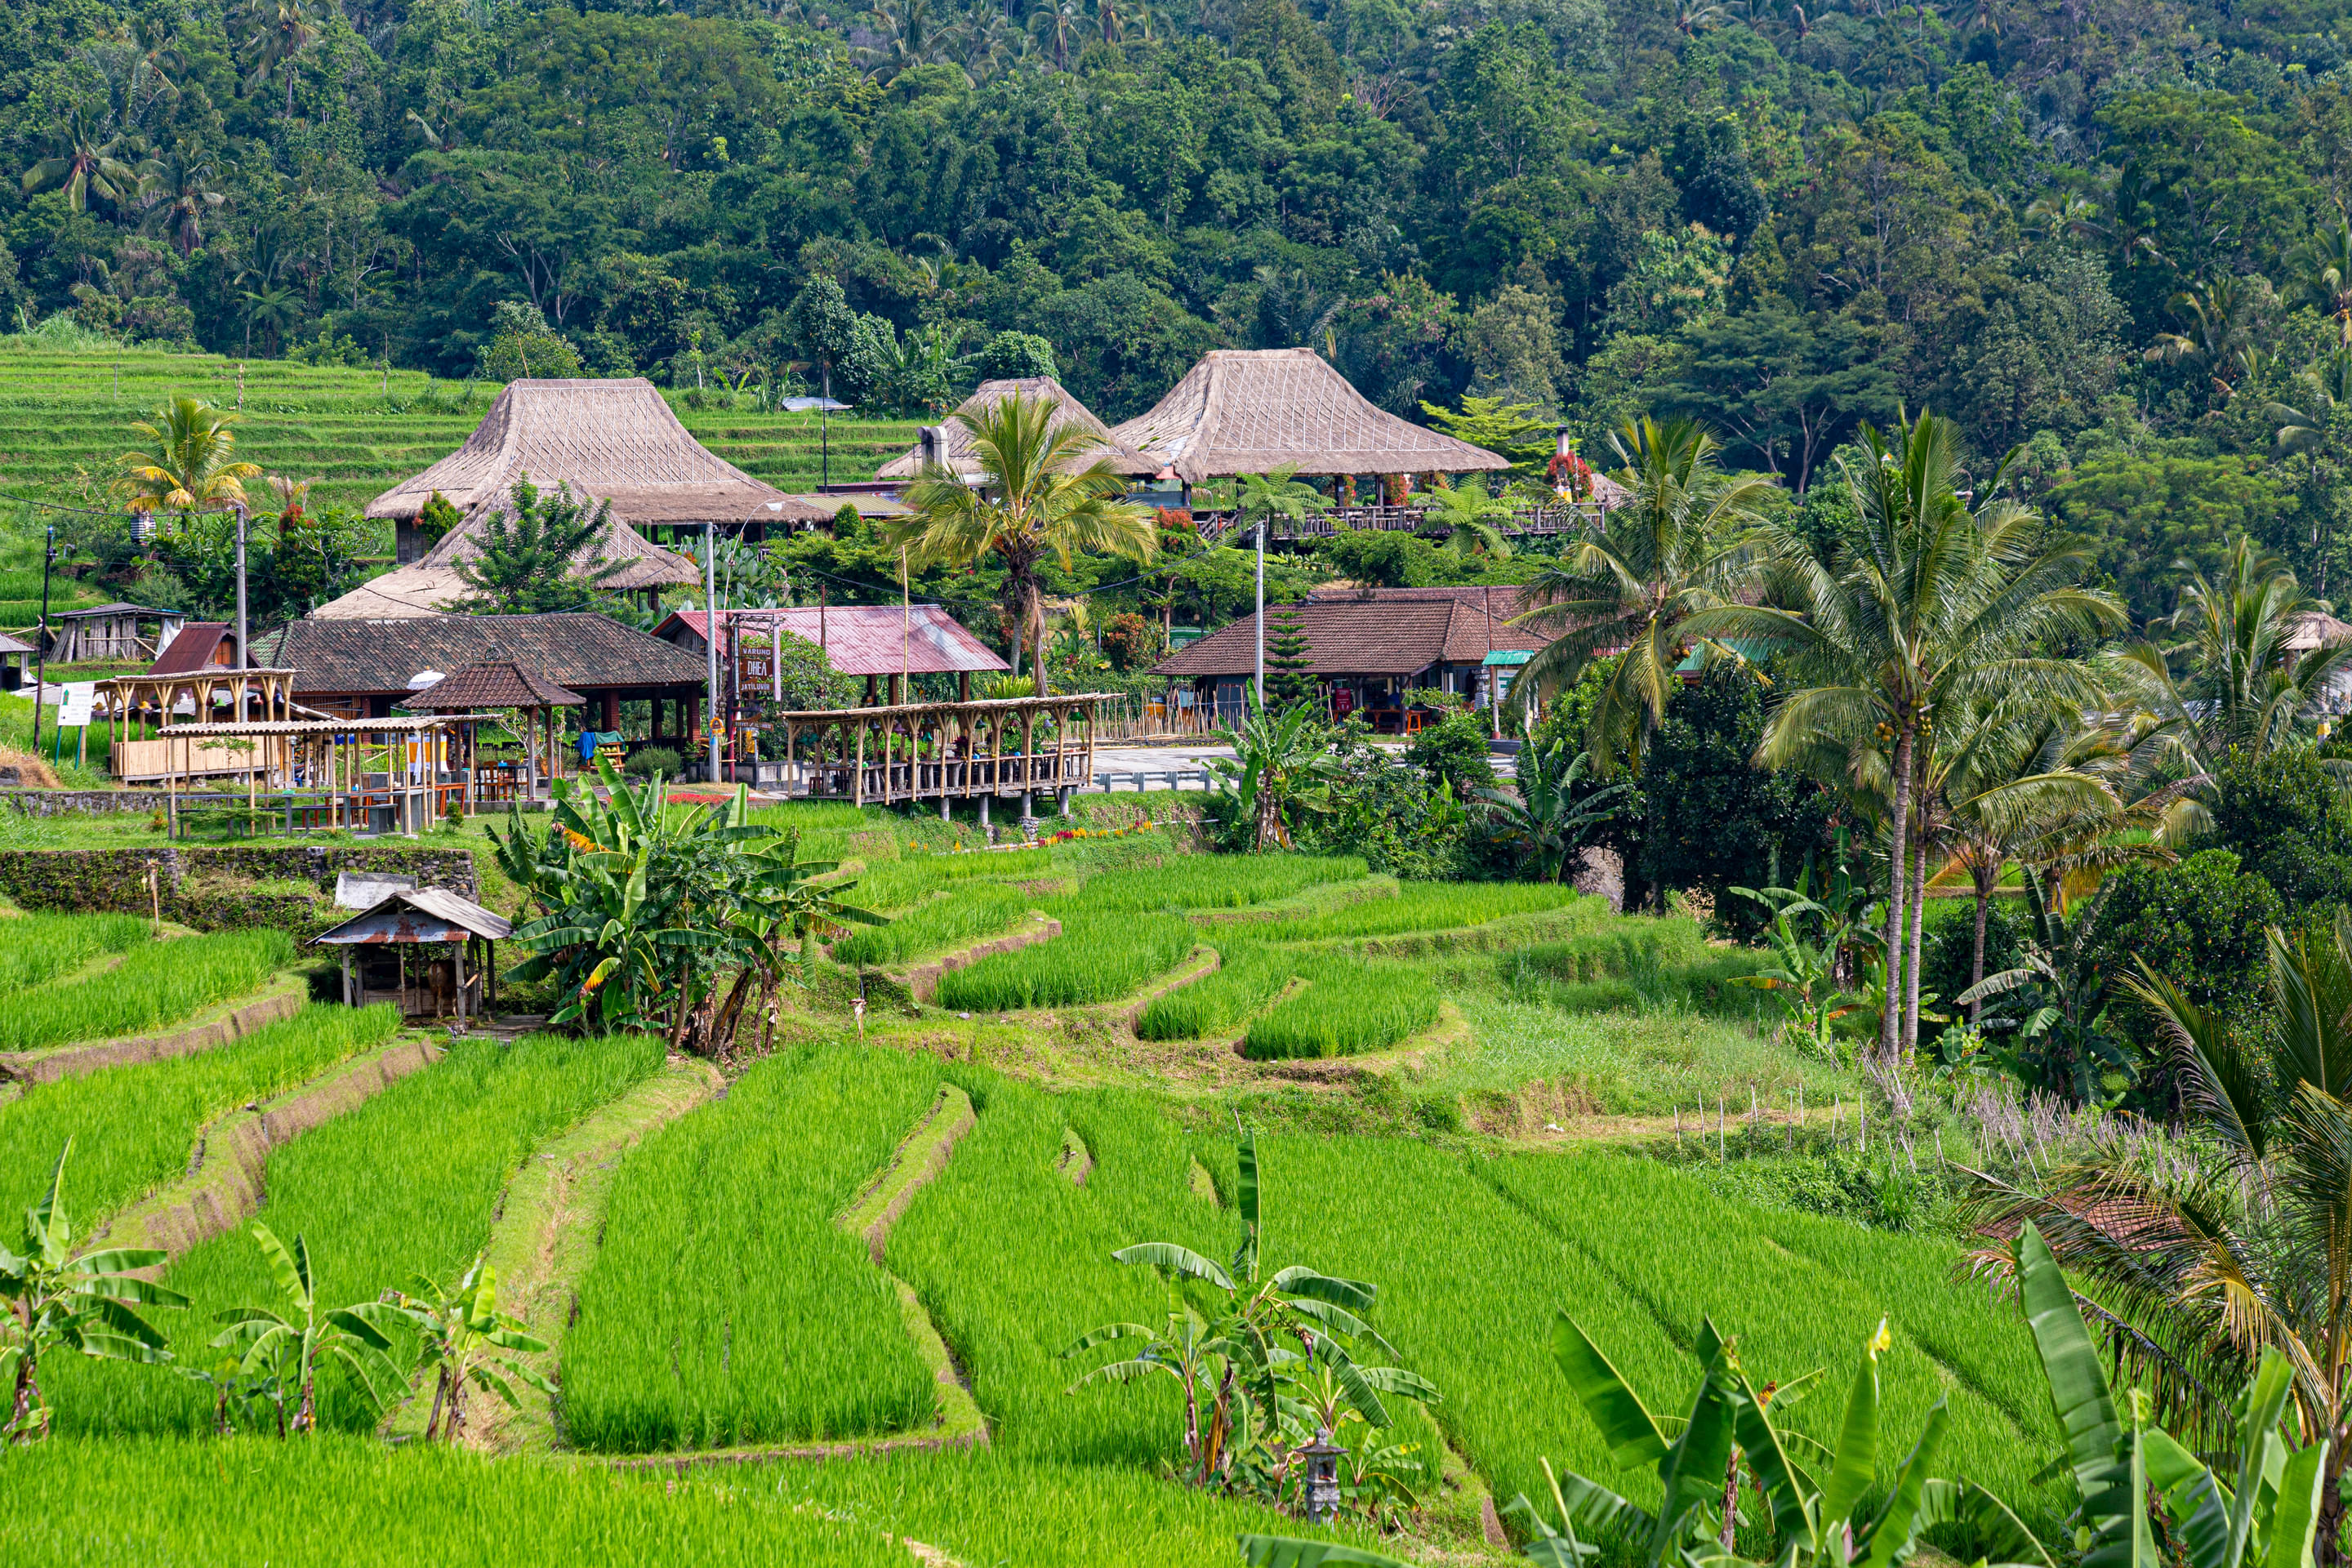 Jatiluwih Rice Terraces Overview